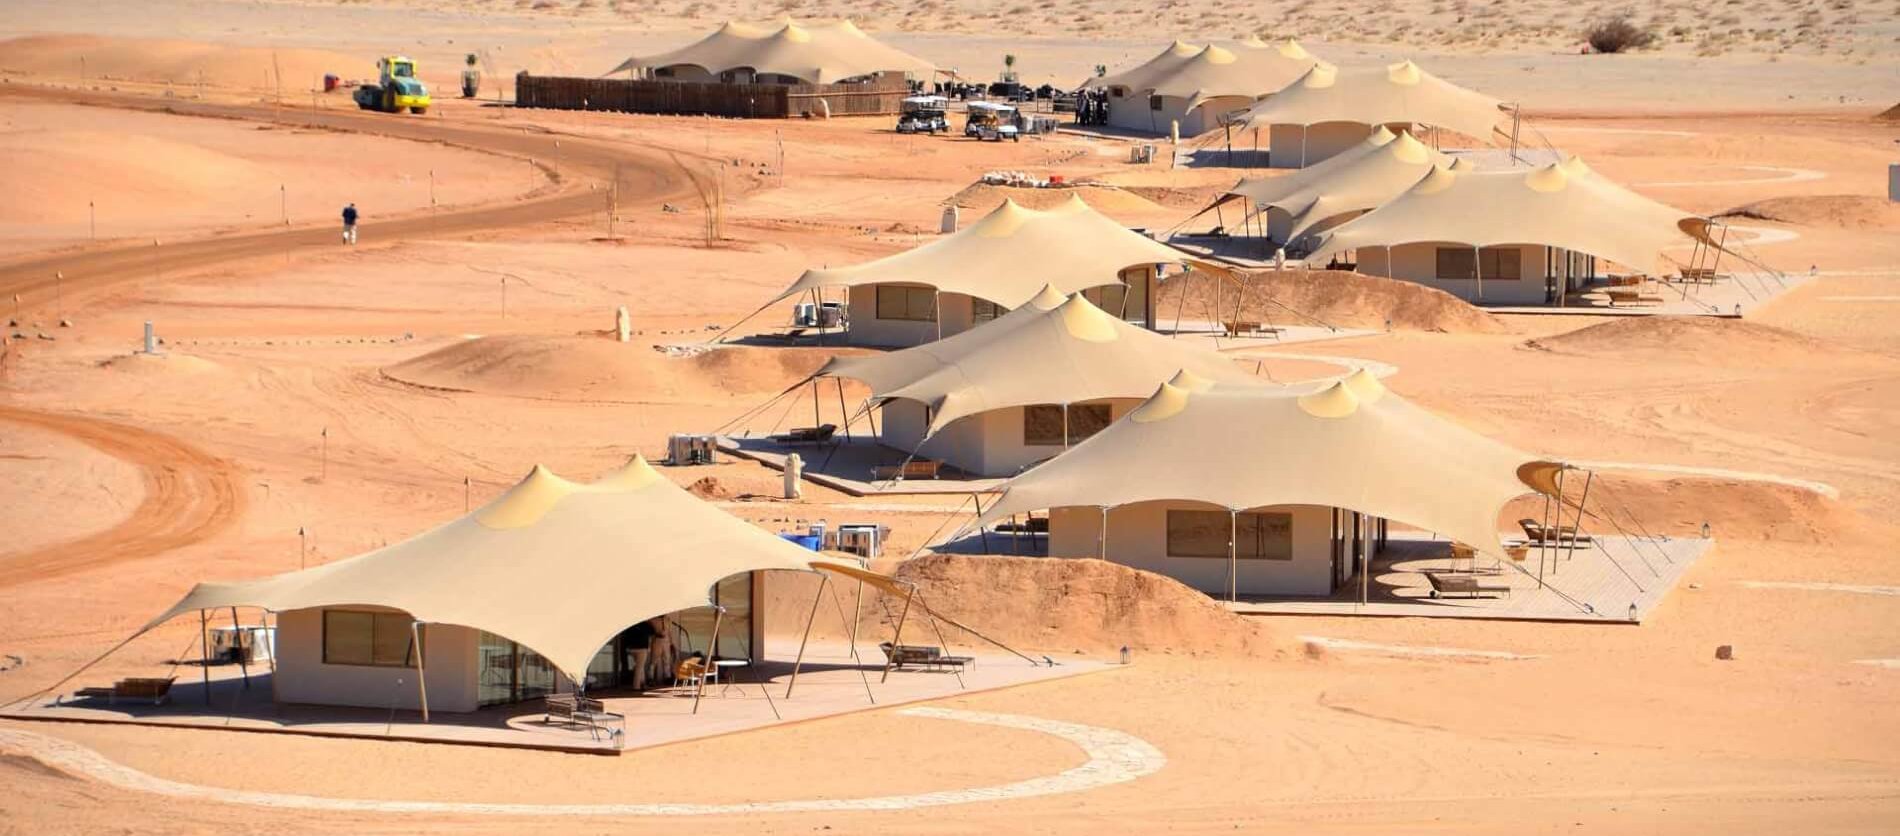 Ashar Winter Camp Phase 1, KSA 2